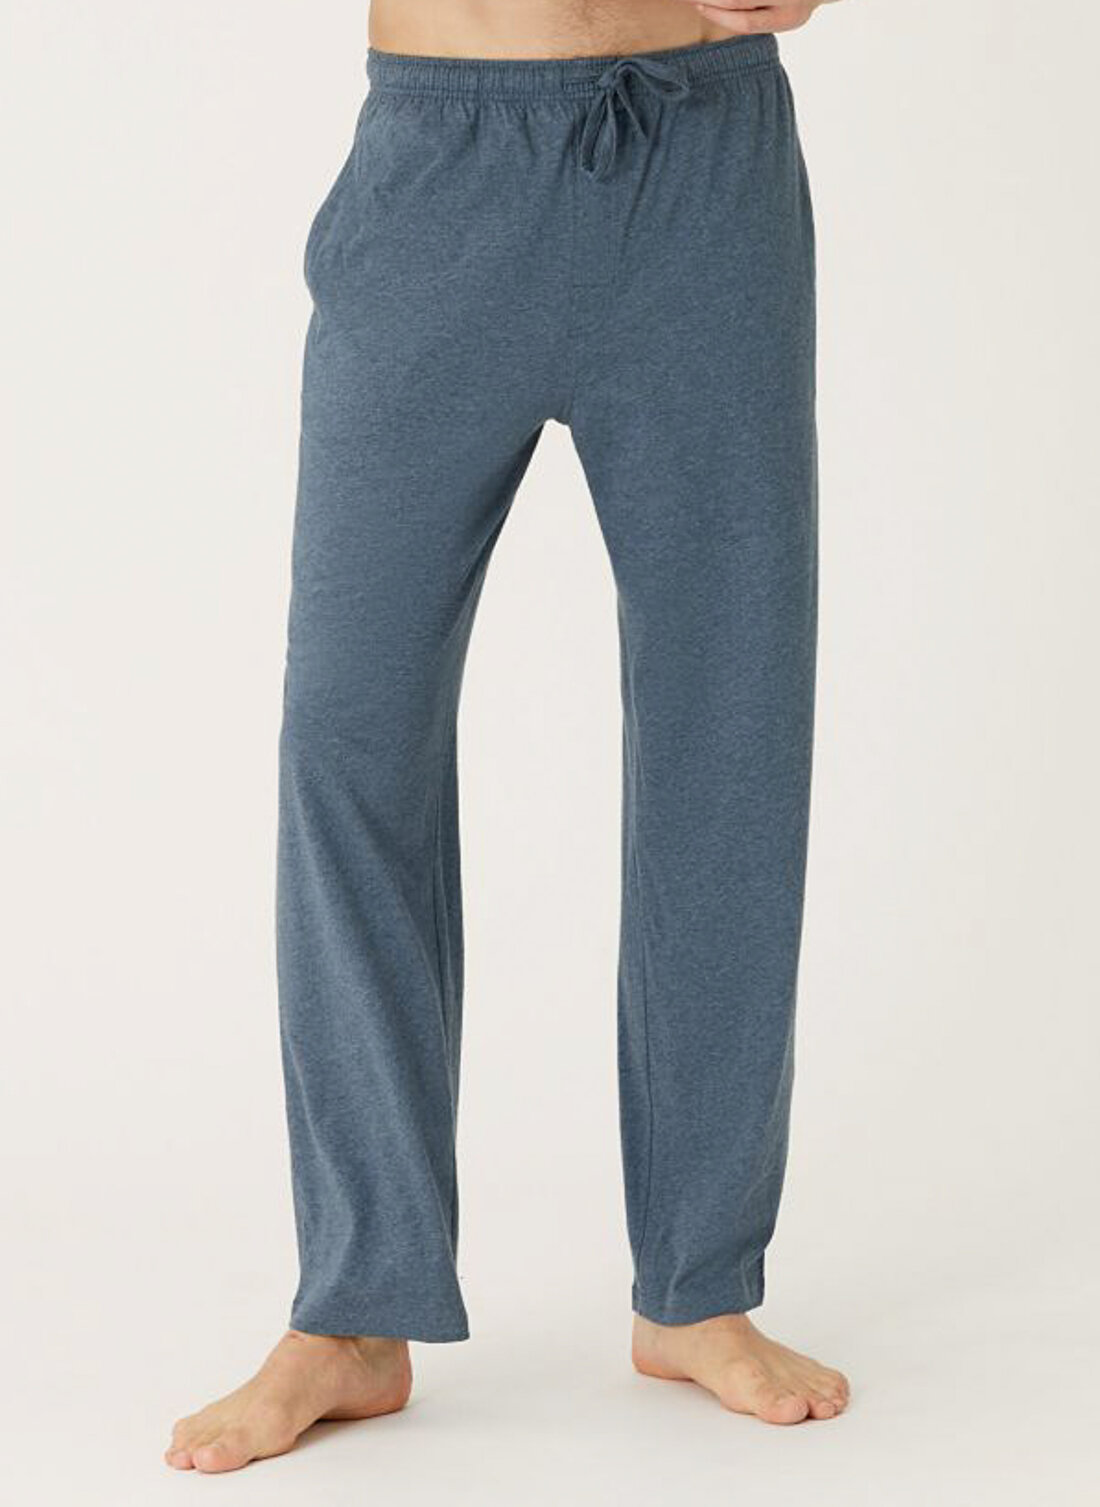 Marks & Spencer Açık Mavi - Lacivert Erkek Pijama Alt 0500